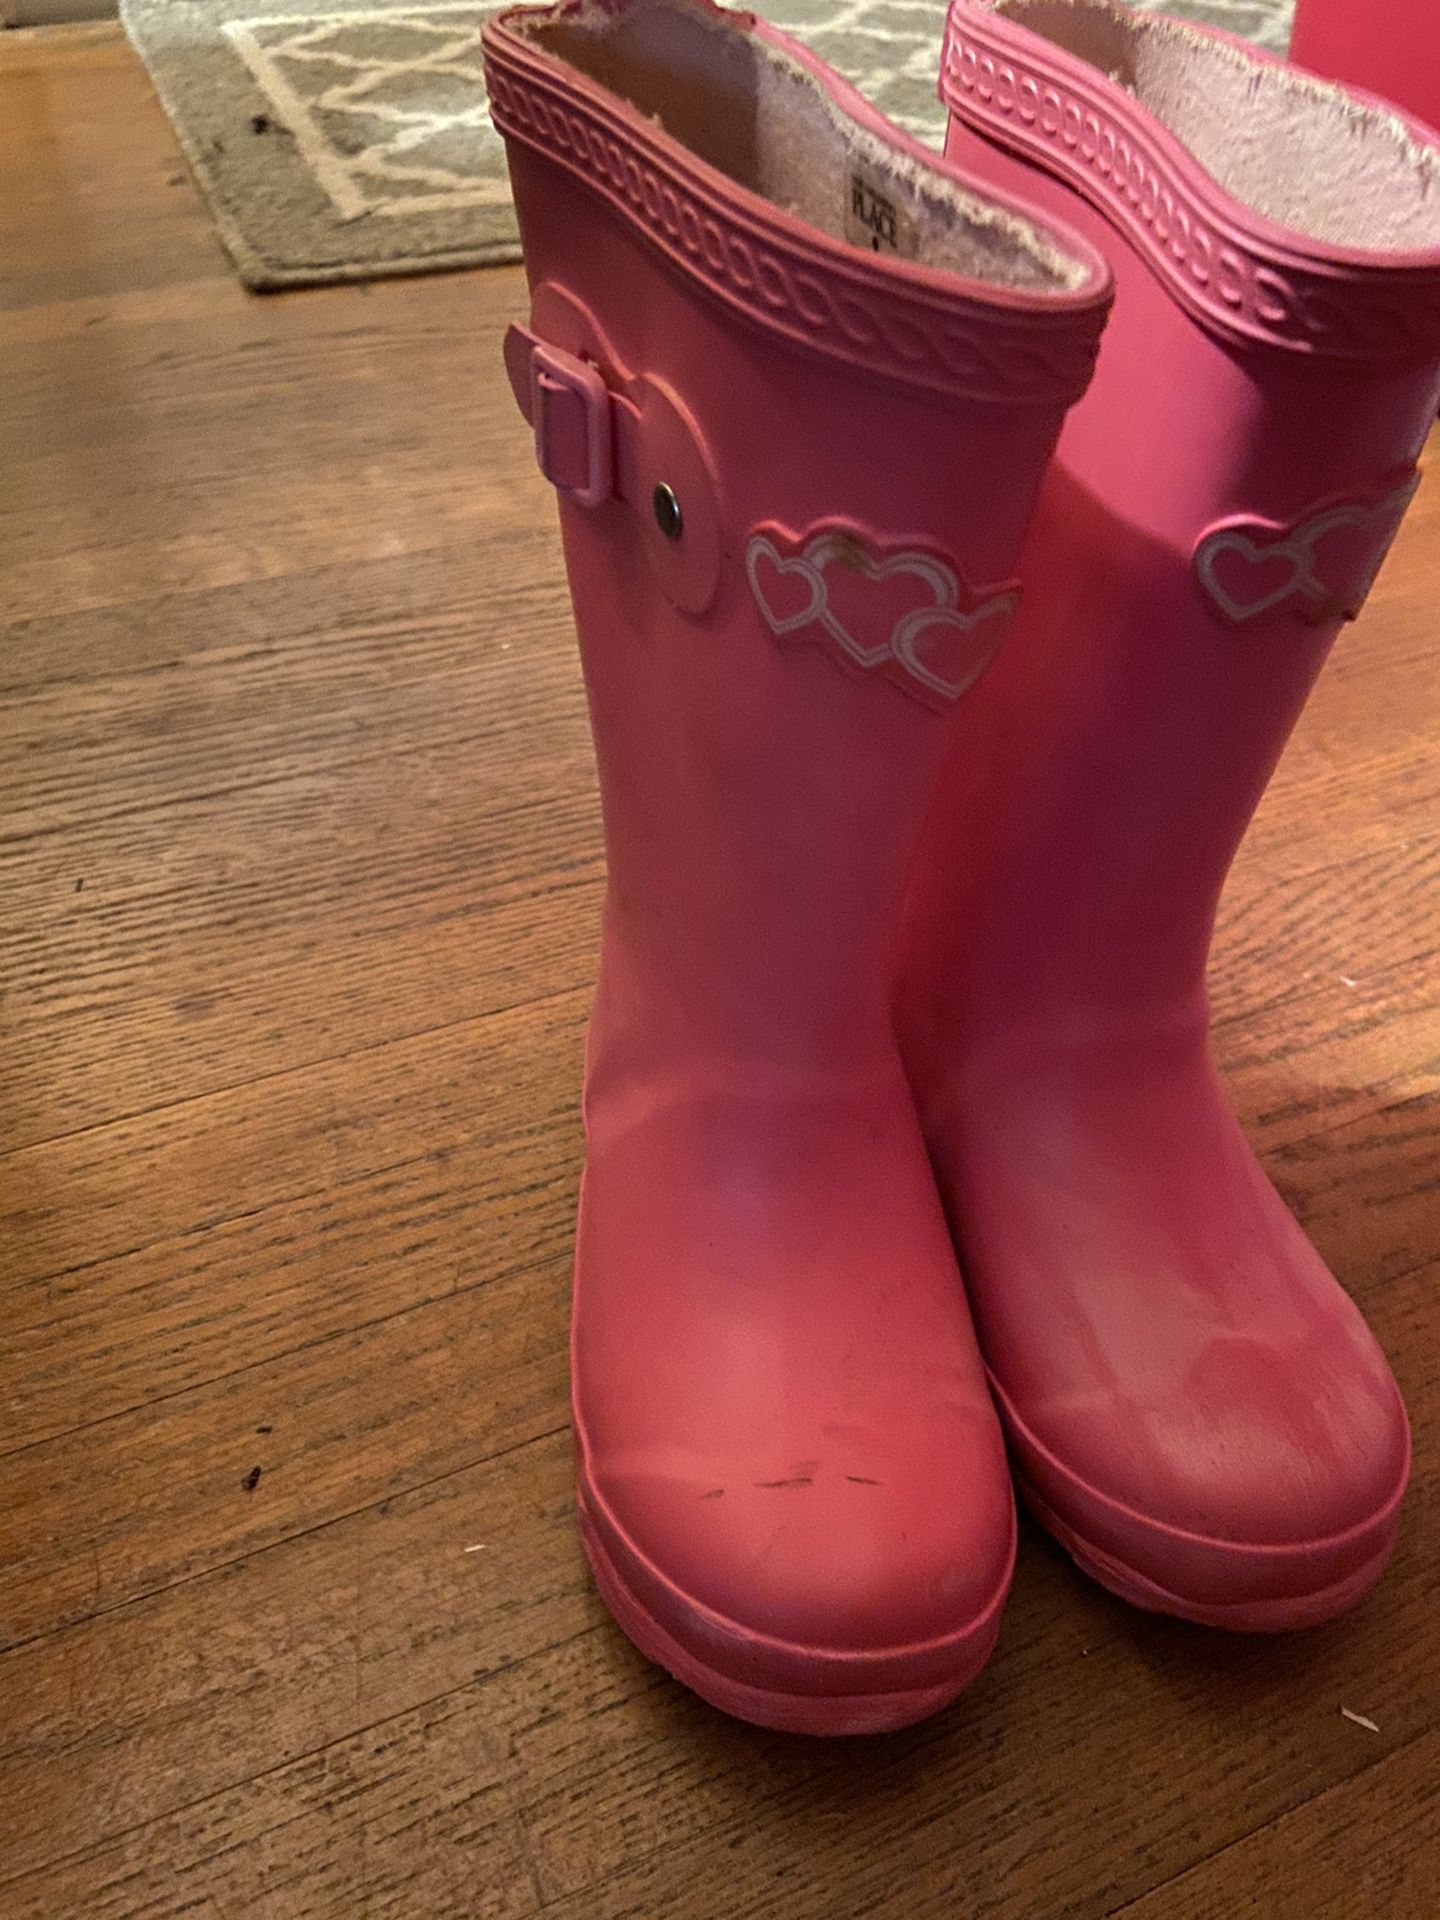 Girls Rain Boots Size 9